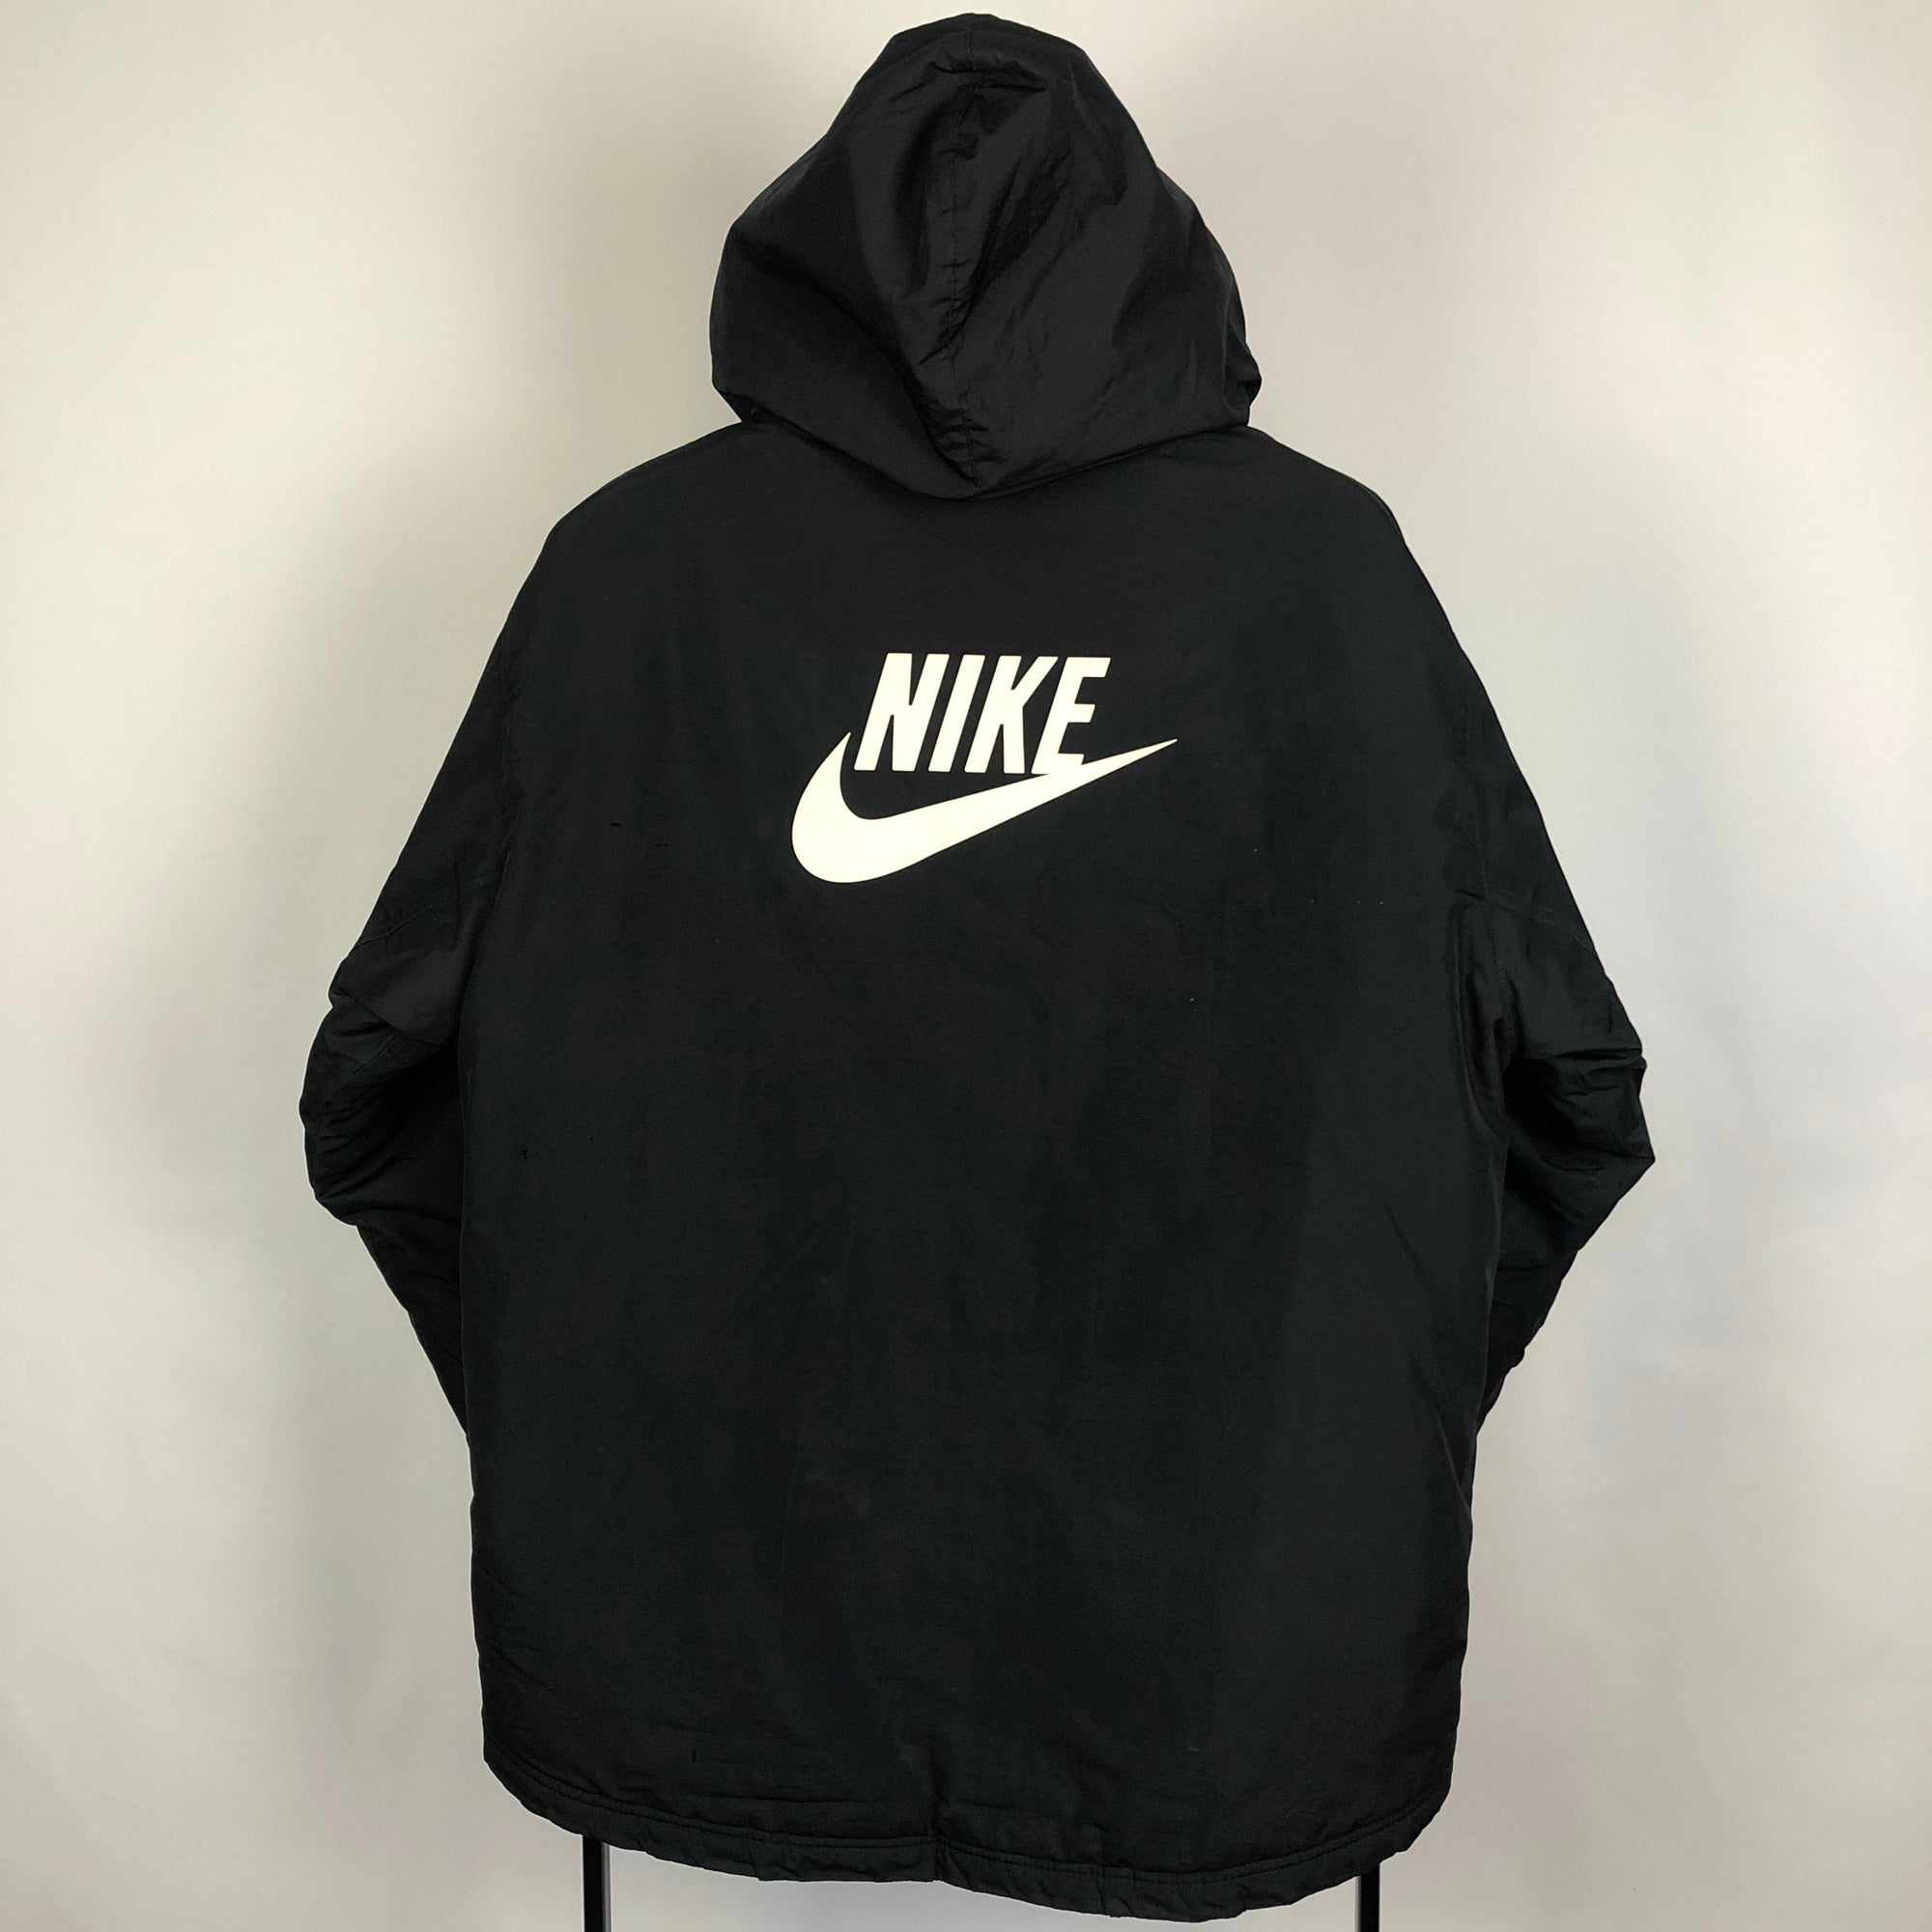 Nike Puffer Jacket in Black - Men's Medium/Women's Large